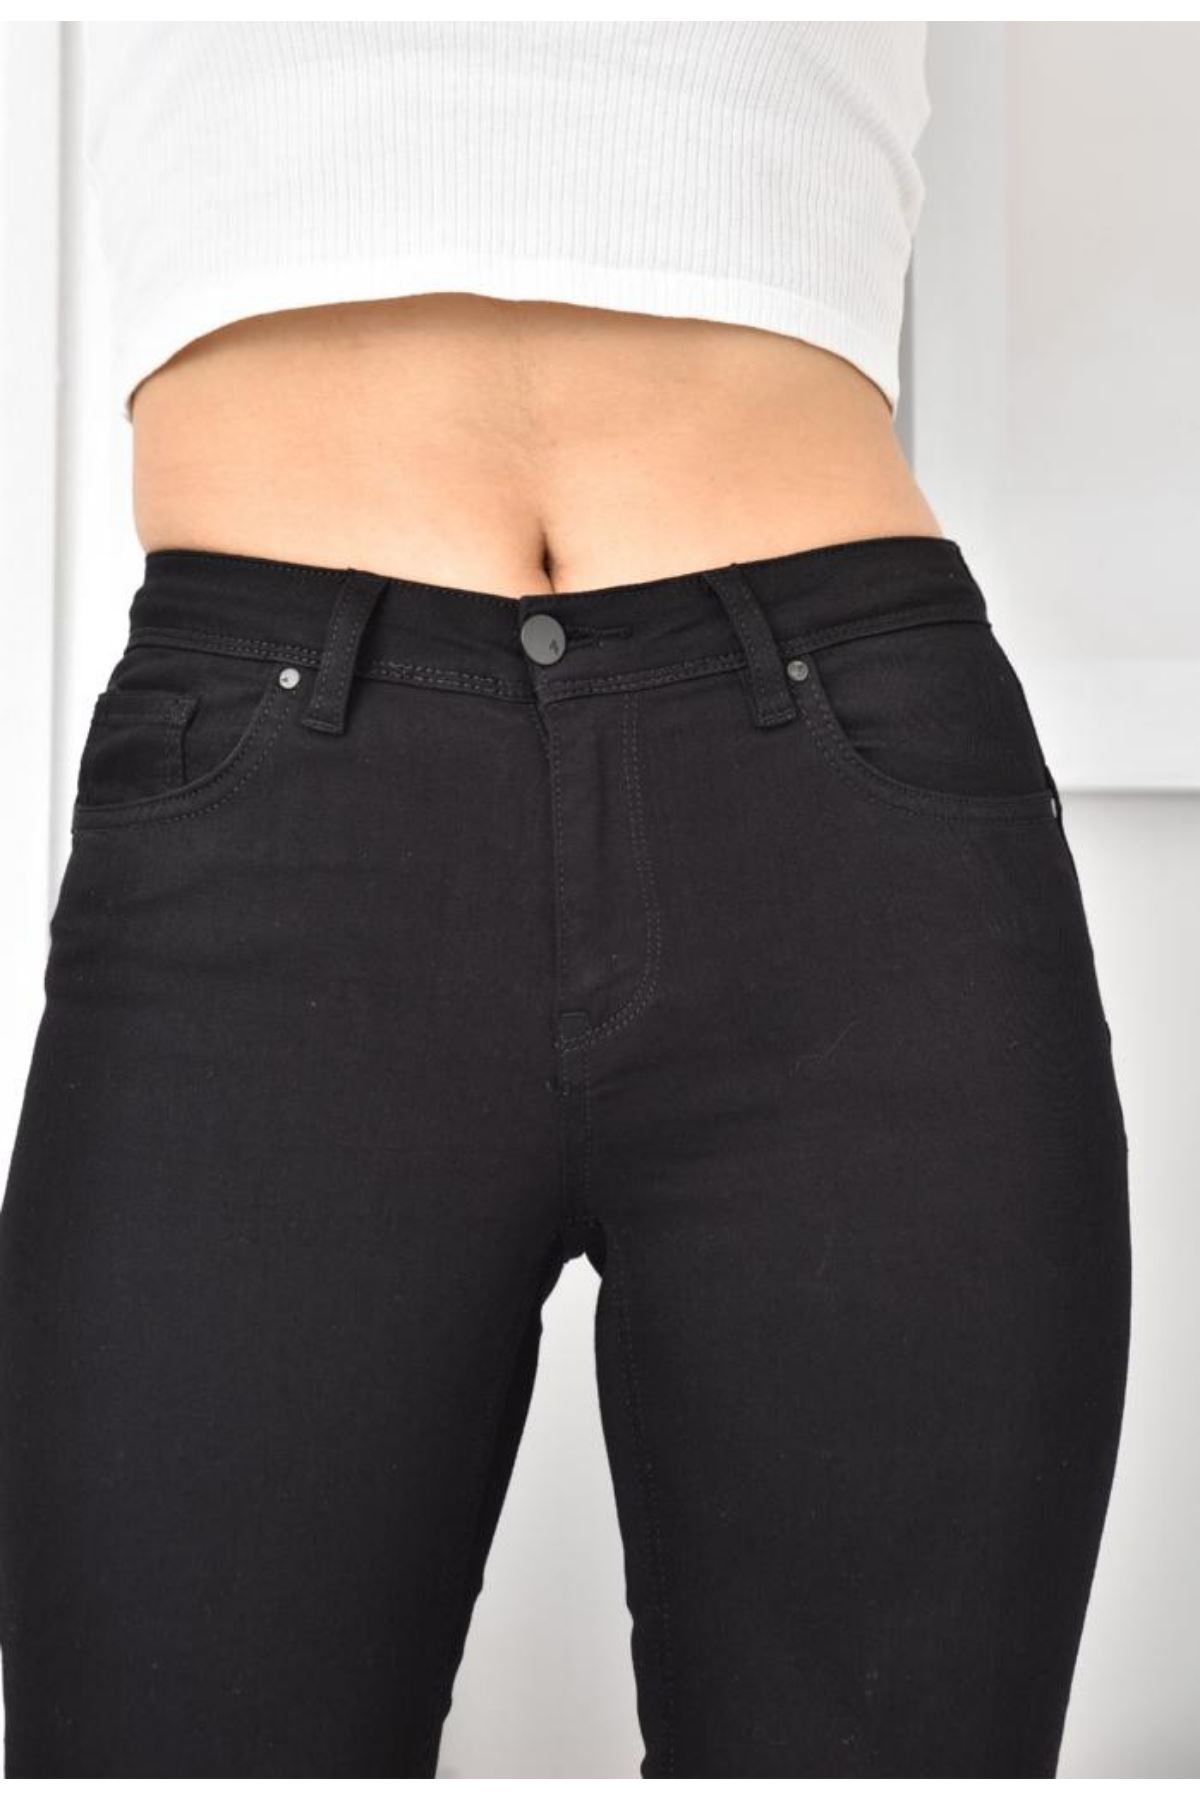 Giyinsen Kadın Siyah Jean Pantolon - 23YD52001049